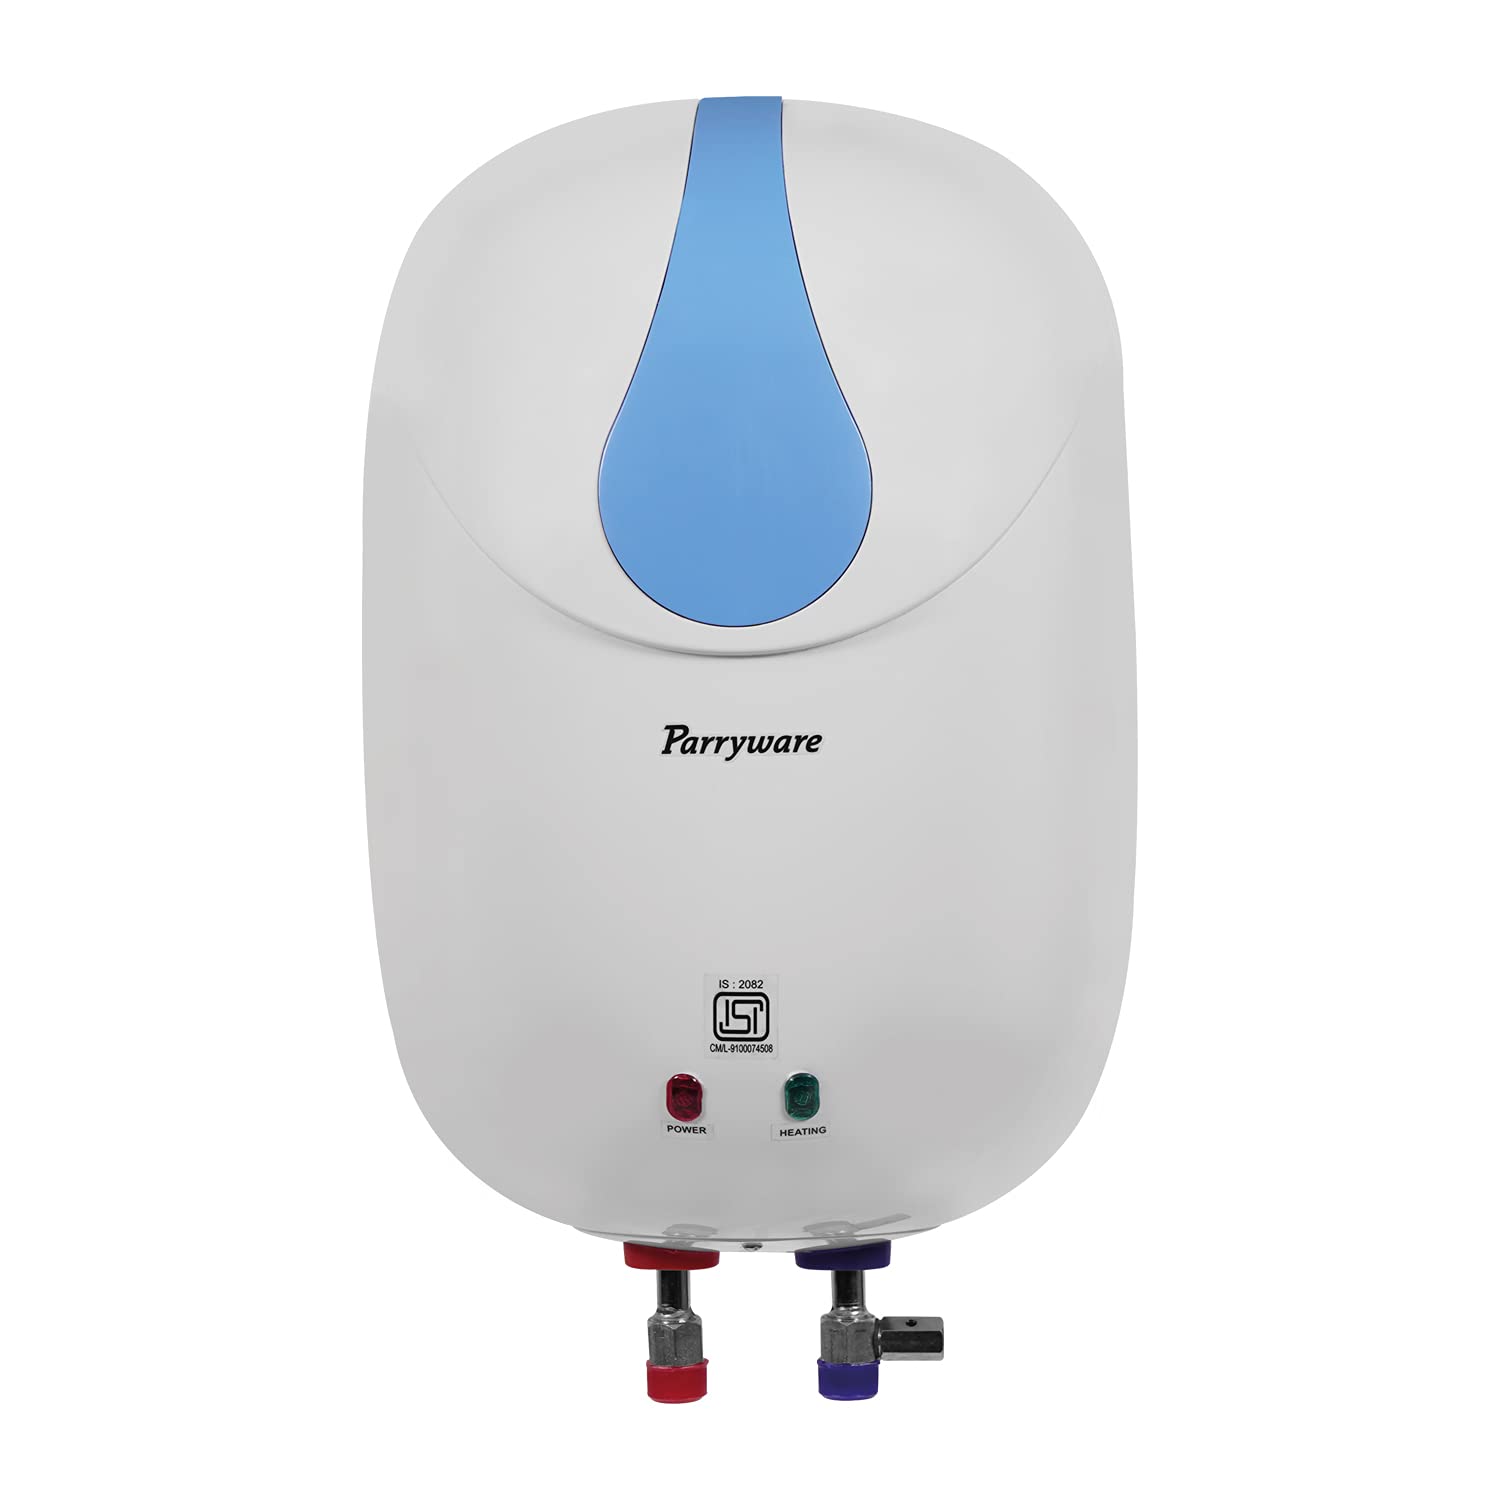  Parryware Storage Water Heater 15 Liter C501699 (PW-Blue)